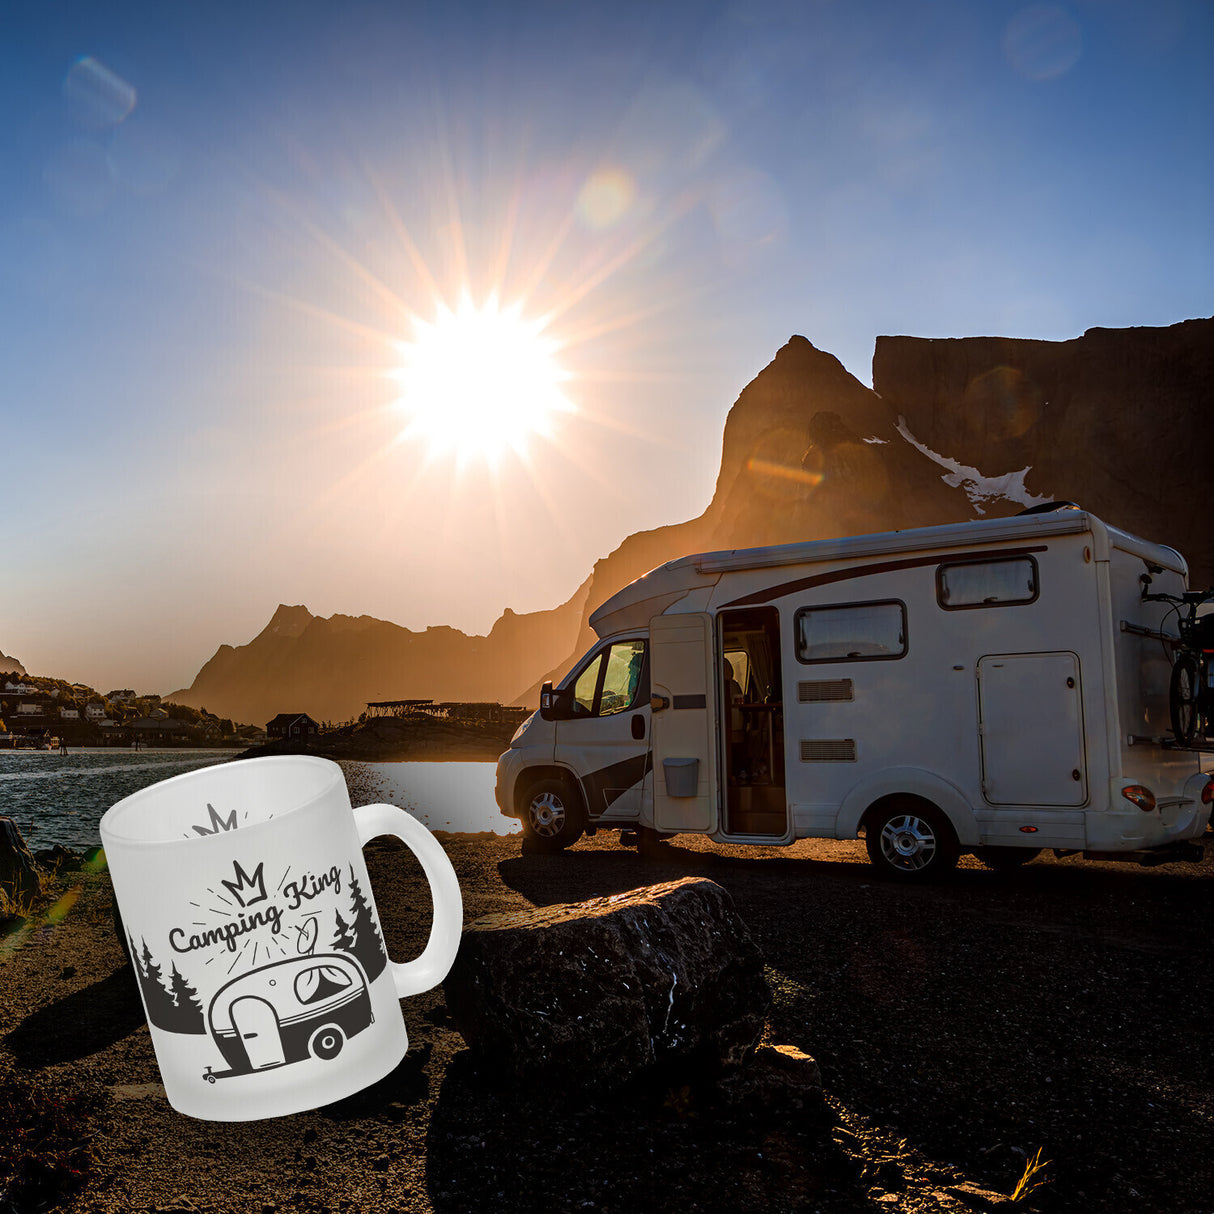 Camping King Kaffeebecher mit wunderschönen Reisemotiven